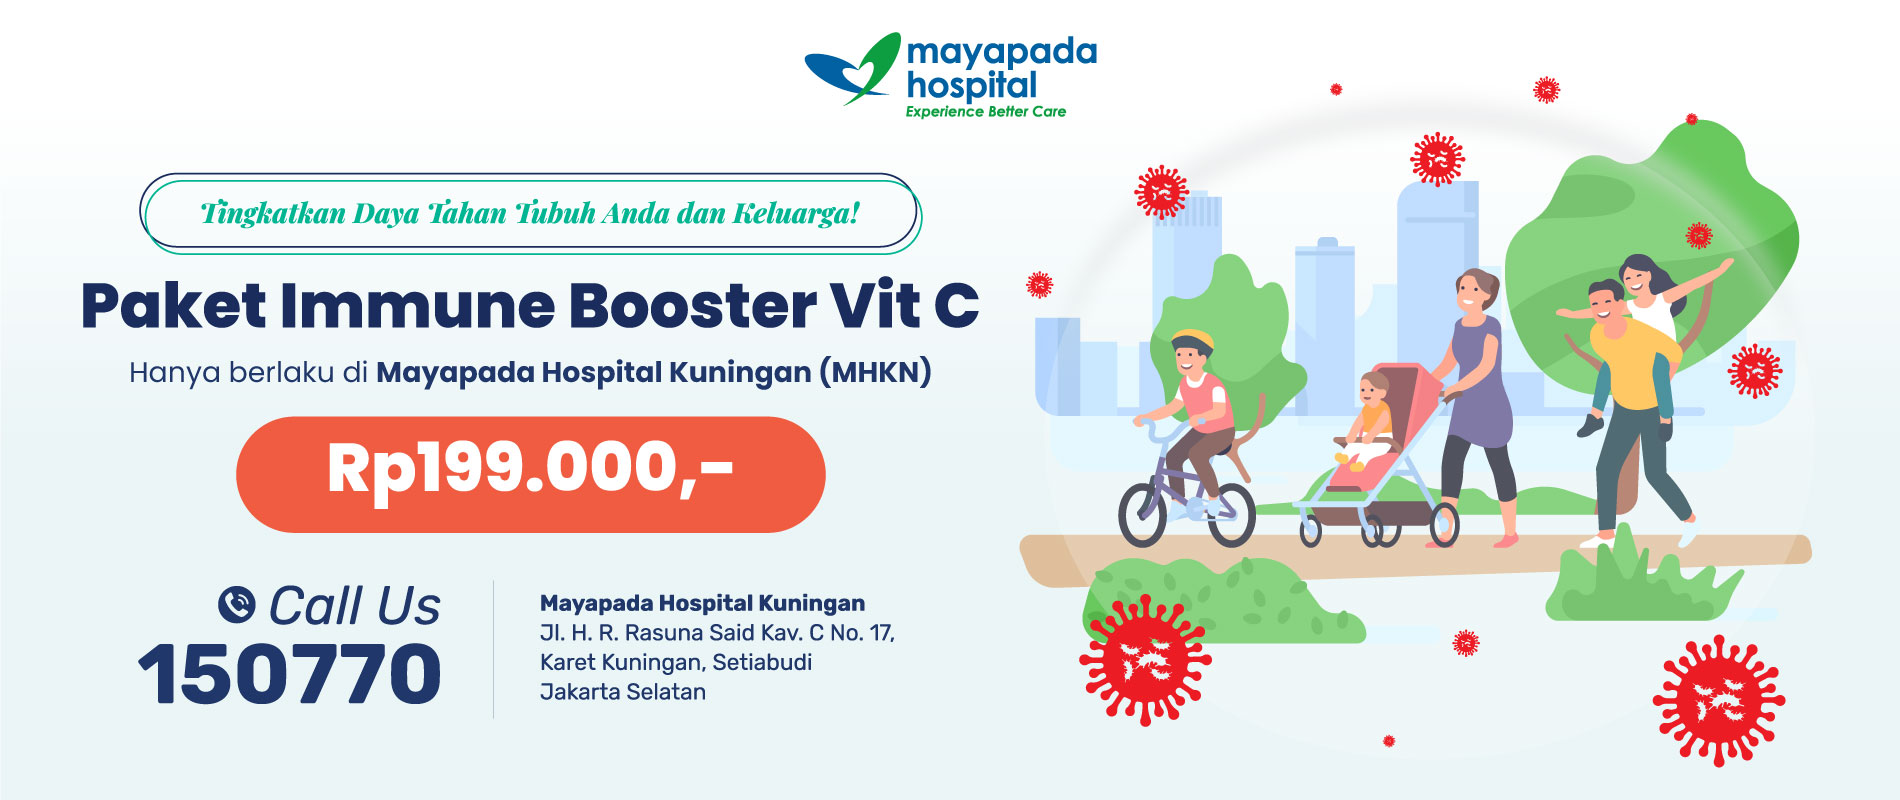 Paket Immune Booster Vit C di Mayapada Hospital Kuningan (MHKN) IMG